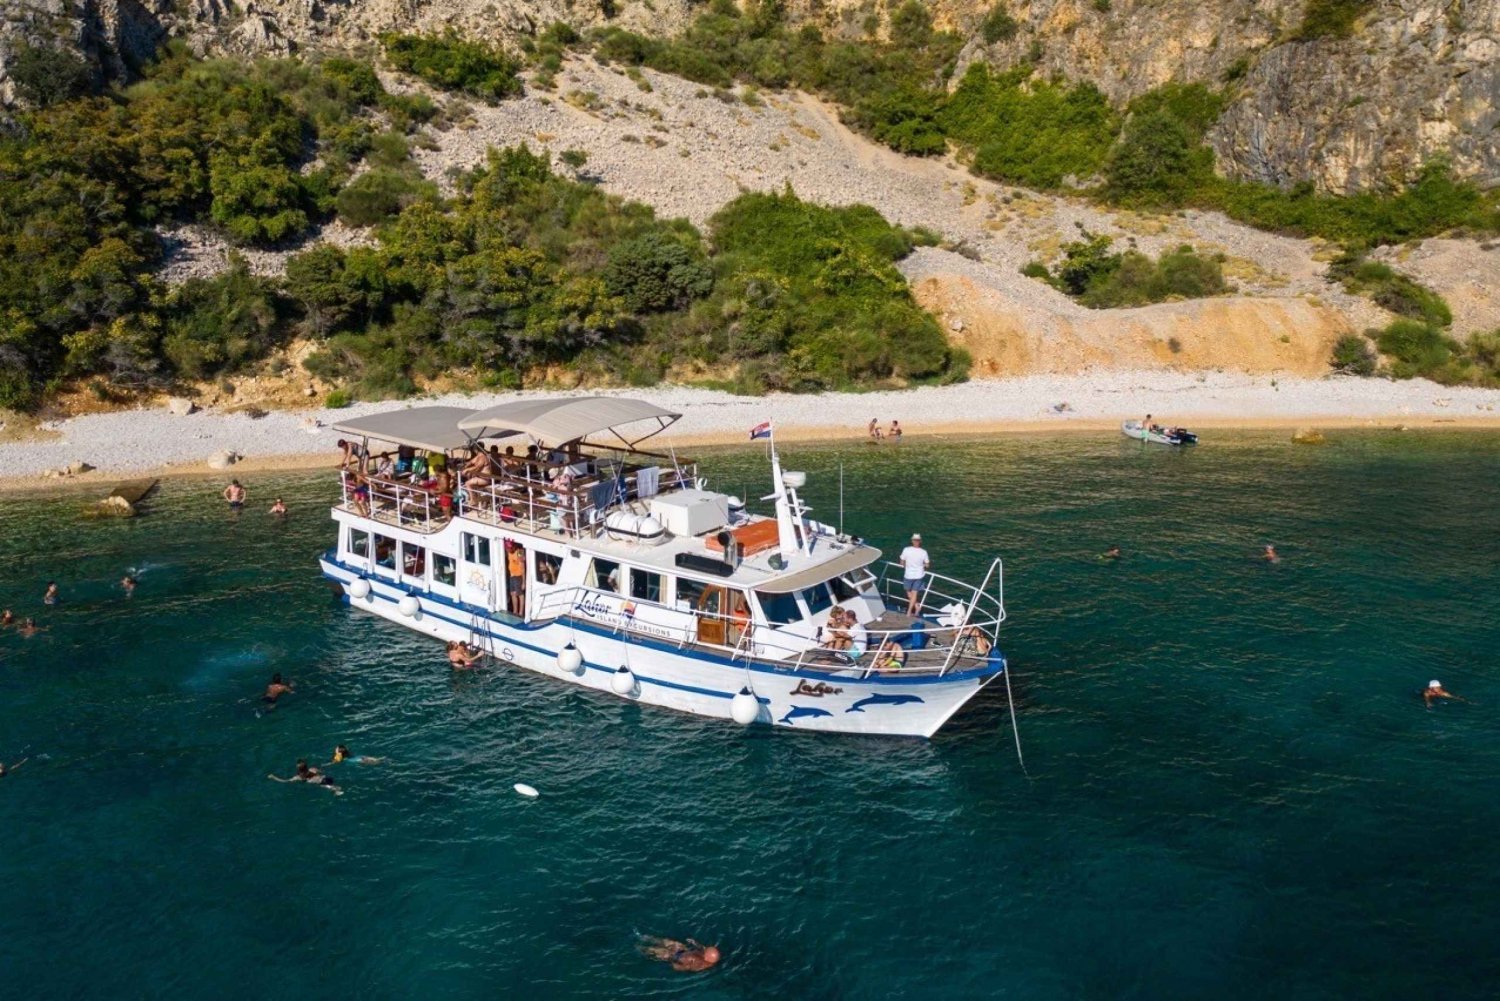 Punat: passeio de barco pela ilha de Grgur, Goli, Rab e Krk com almoço